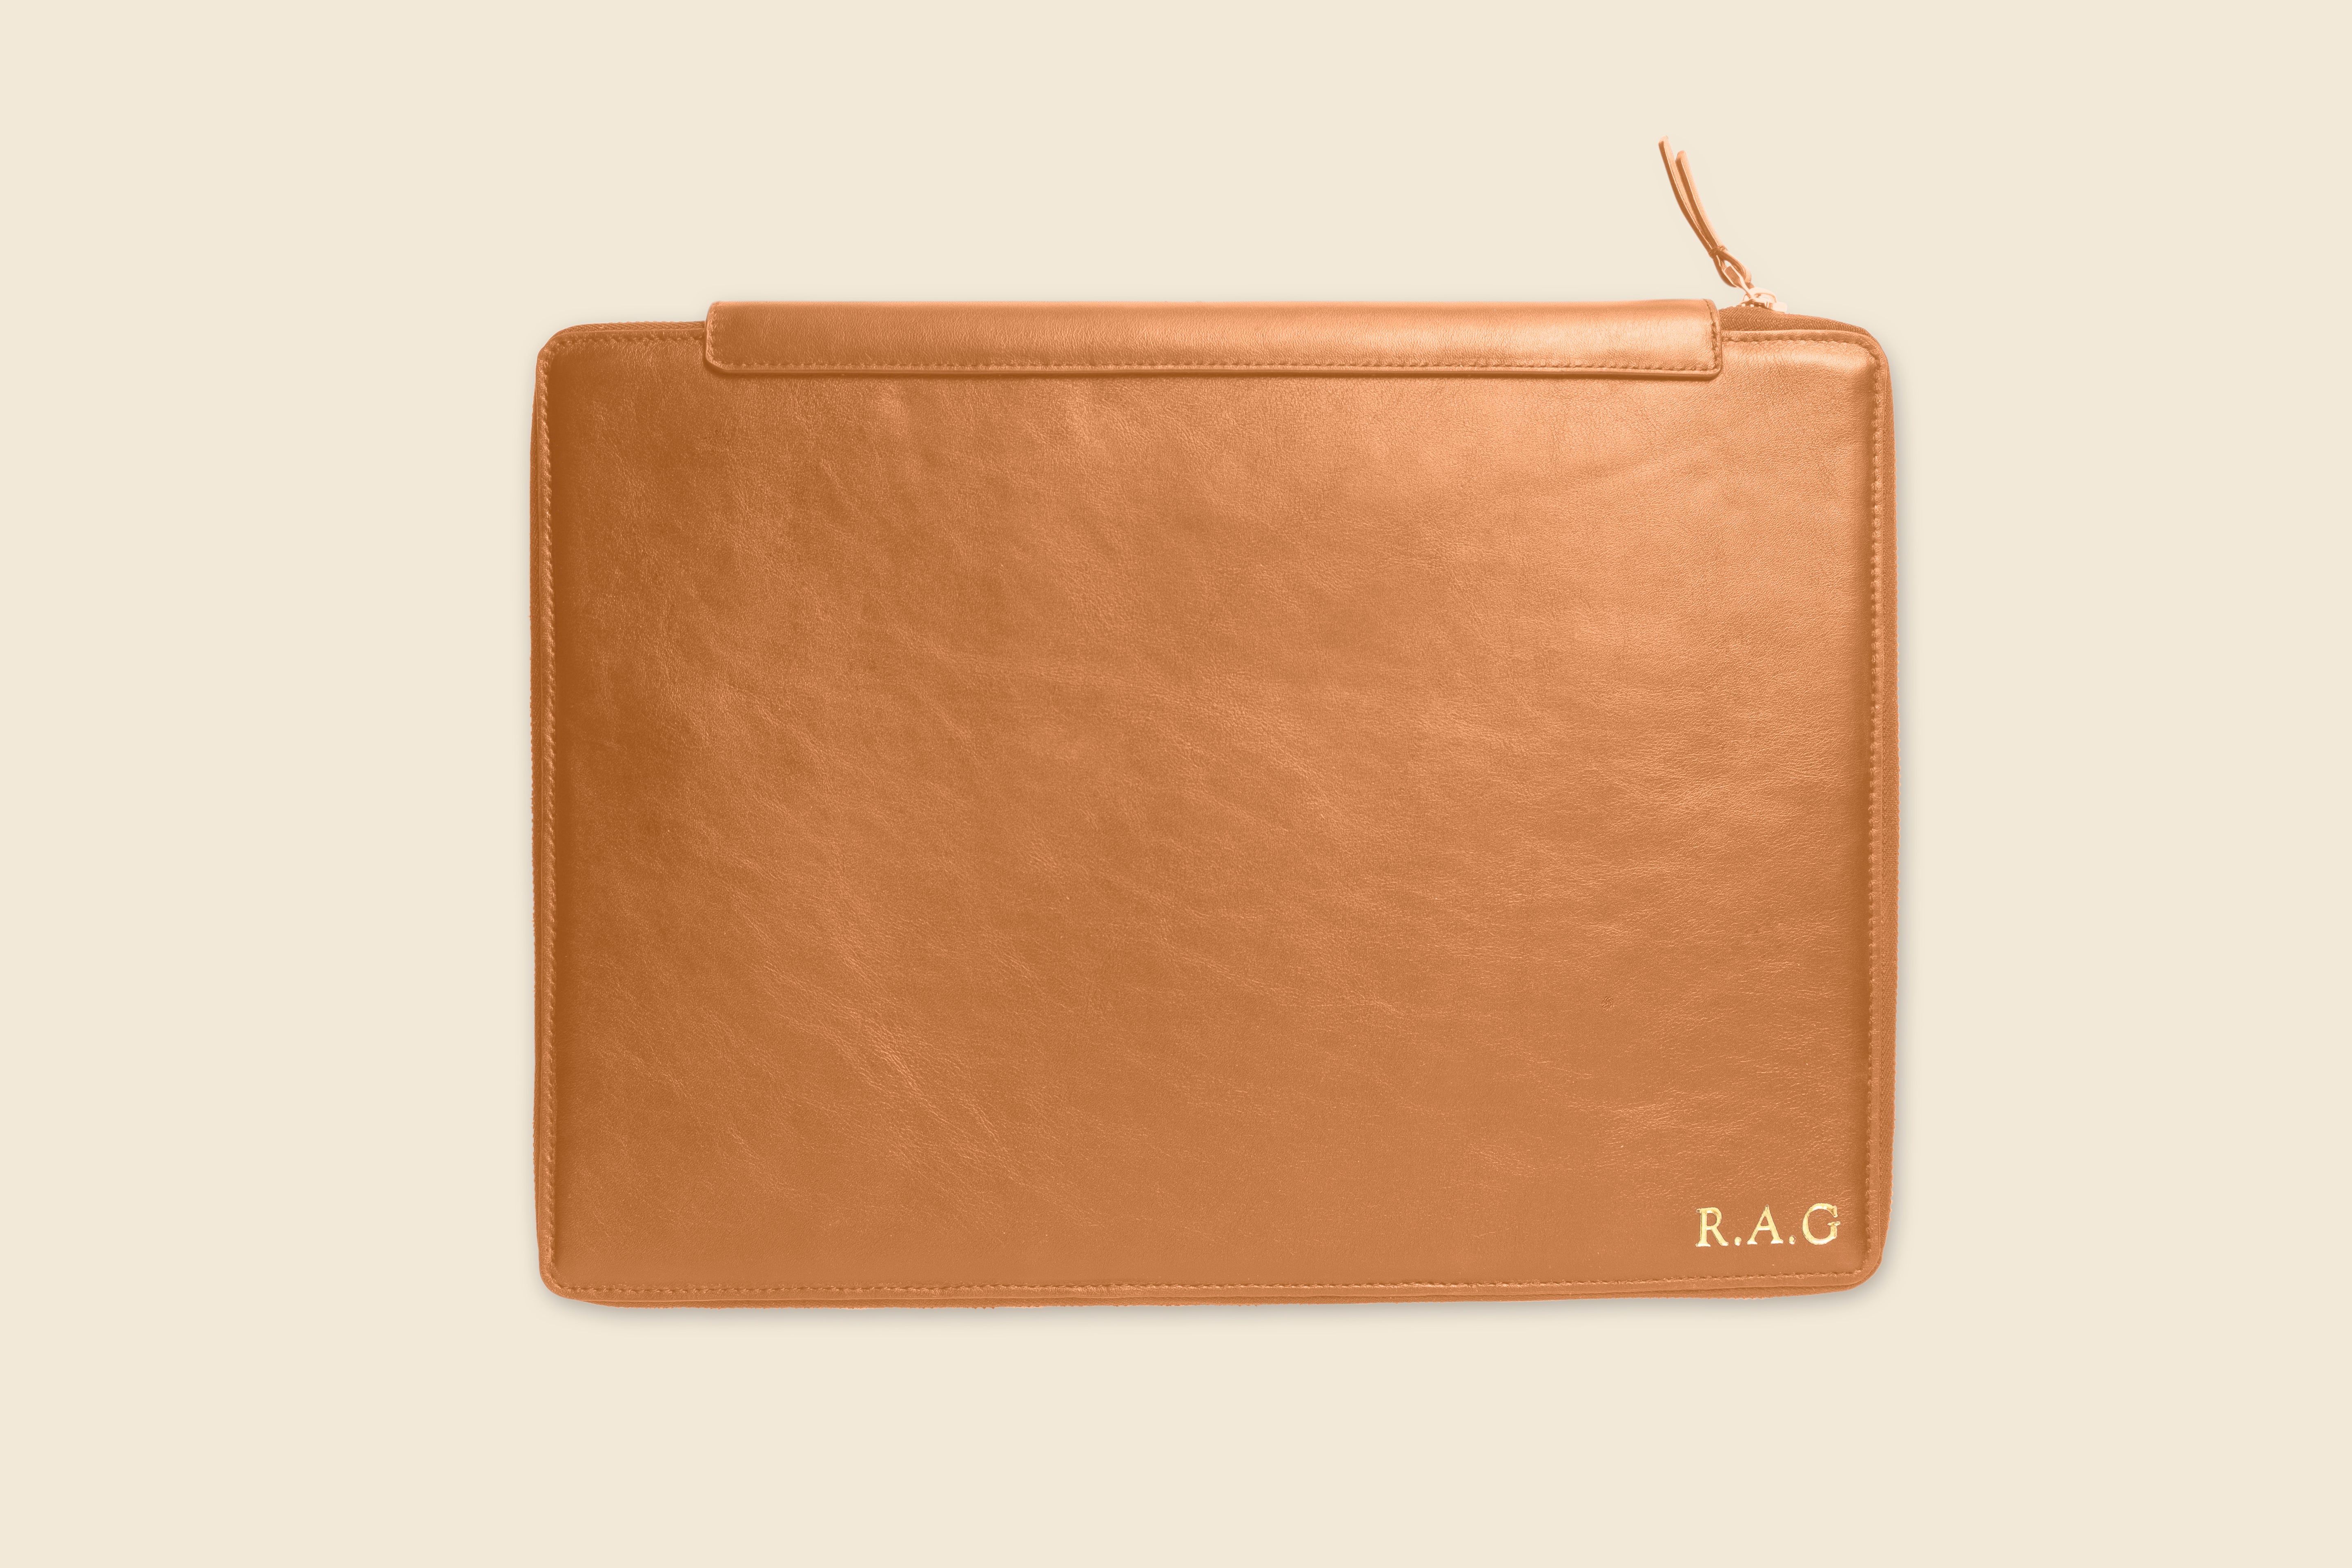 Tan brown leather pad folio